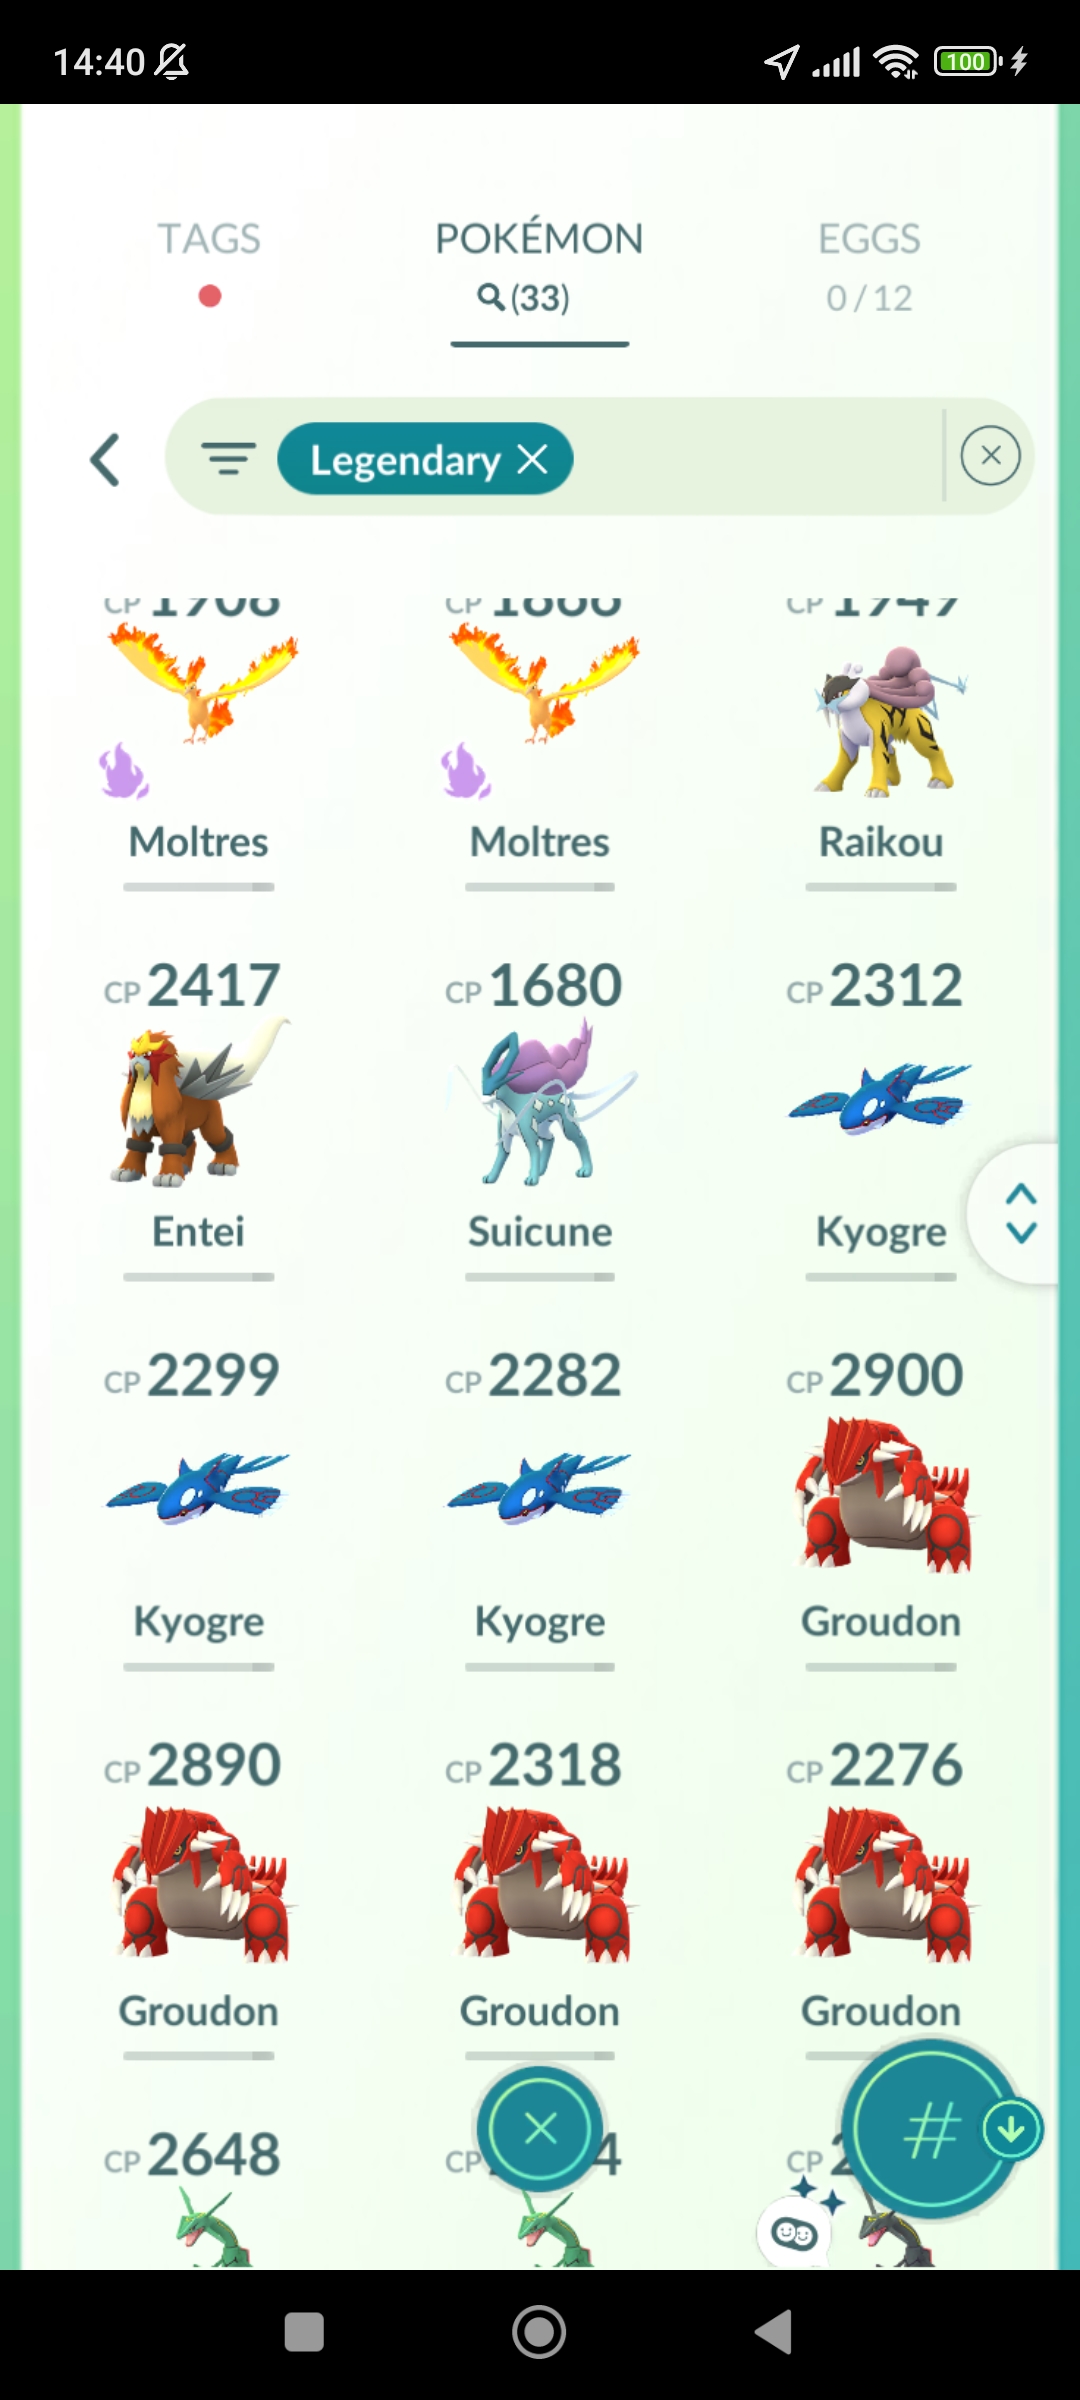 Pokémon GO Shiny Rayquaza x2, Guzzlord, Cresselia - Mini Account